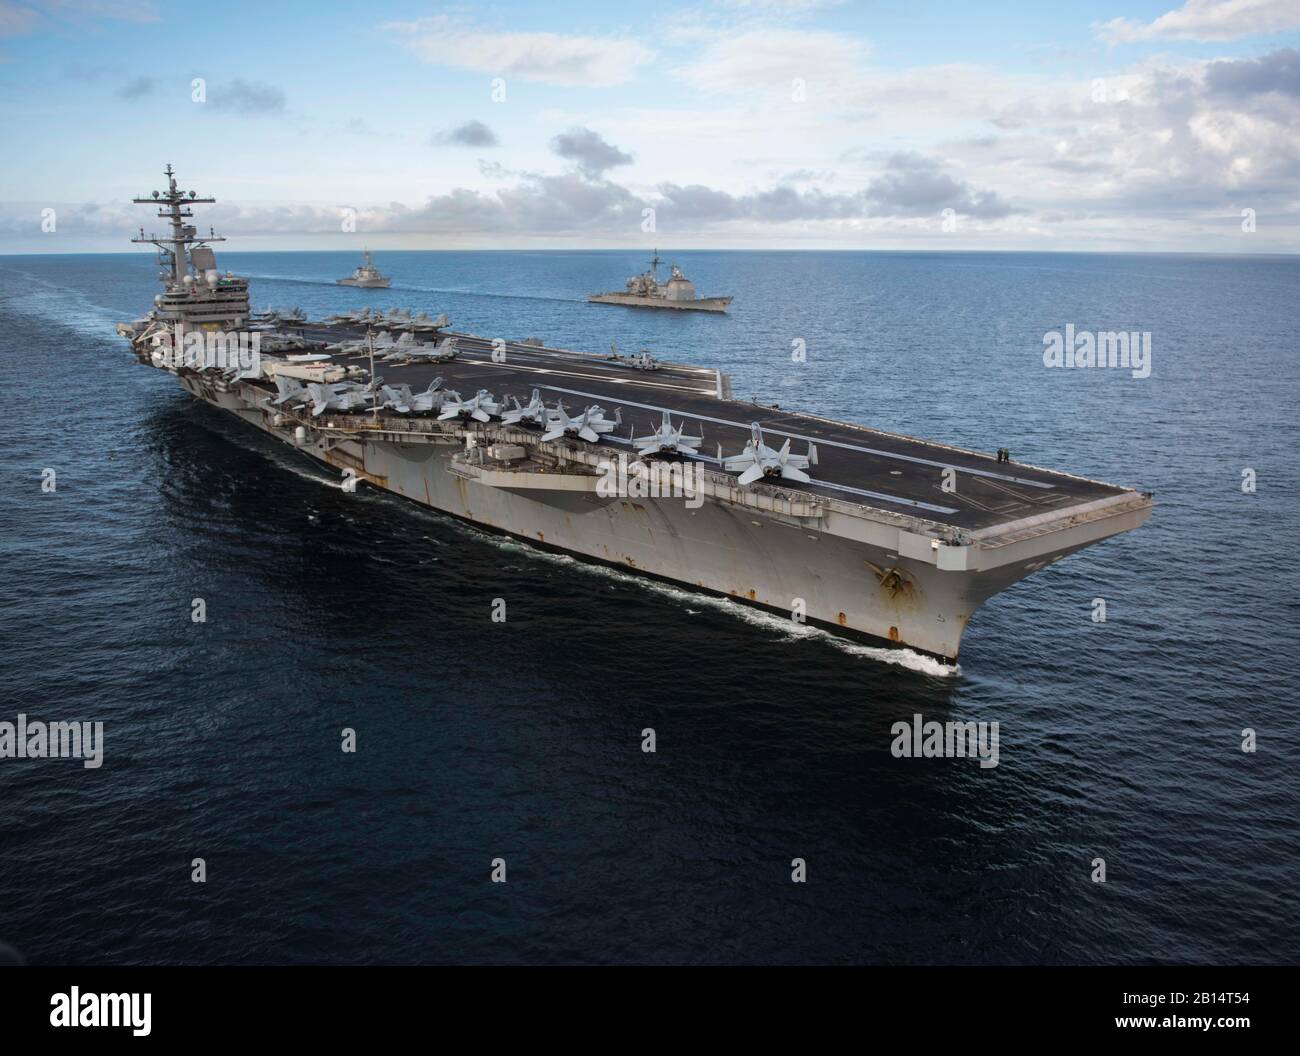 El portaaviones USS George H.W. Bush (CVN 77), crucero de misiles guiados USS mar Filipino (CG 58), y el misil guiado por el destructor USS Donald Cook (DDG 75) operan en la formación durante el ejercicio de 2017 Guerrero sajón en el Océano Atlántico el 8 de agosto de 2017. Los Estados Unidos y el Reino Unido co-anfitrión carrier strike group ejercicio demuestra la interoperabilidad y capacidad para responder a las crisis y disuadir a posibles amenazas. (Ee.Uu. Navy photo by Mass Communication Specialist 2nd Class Michael B. Zingaro) Foto de stock